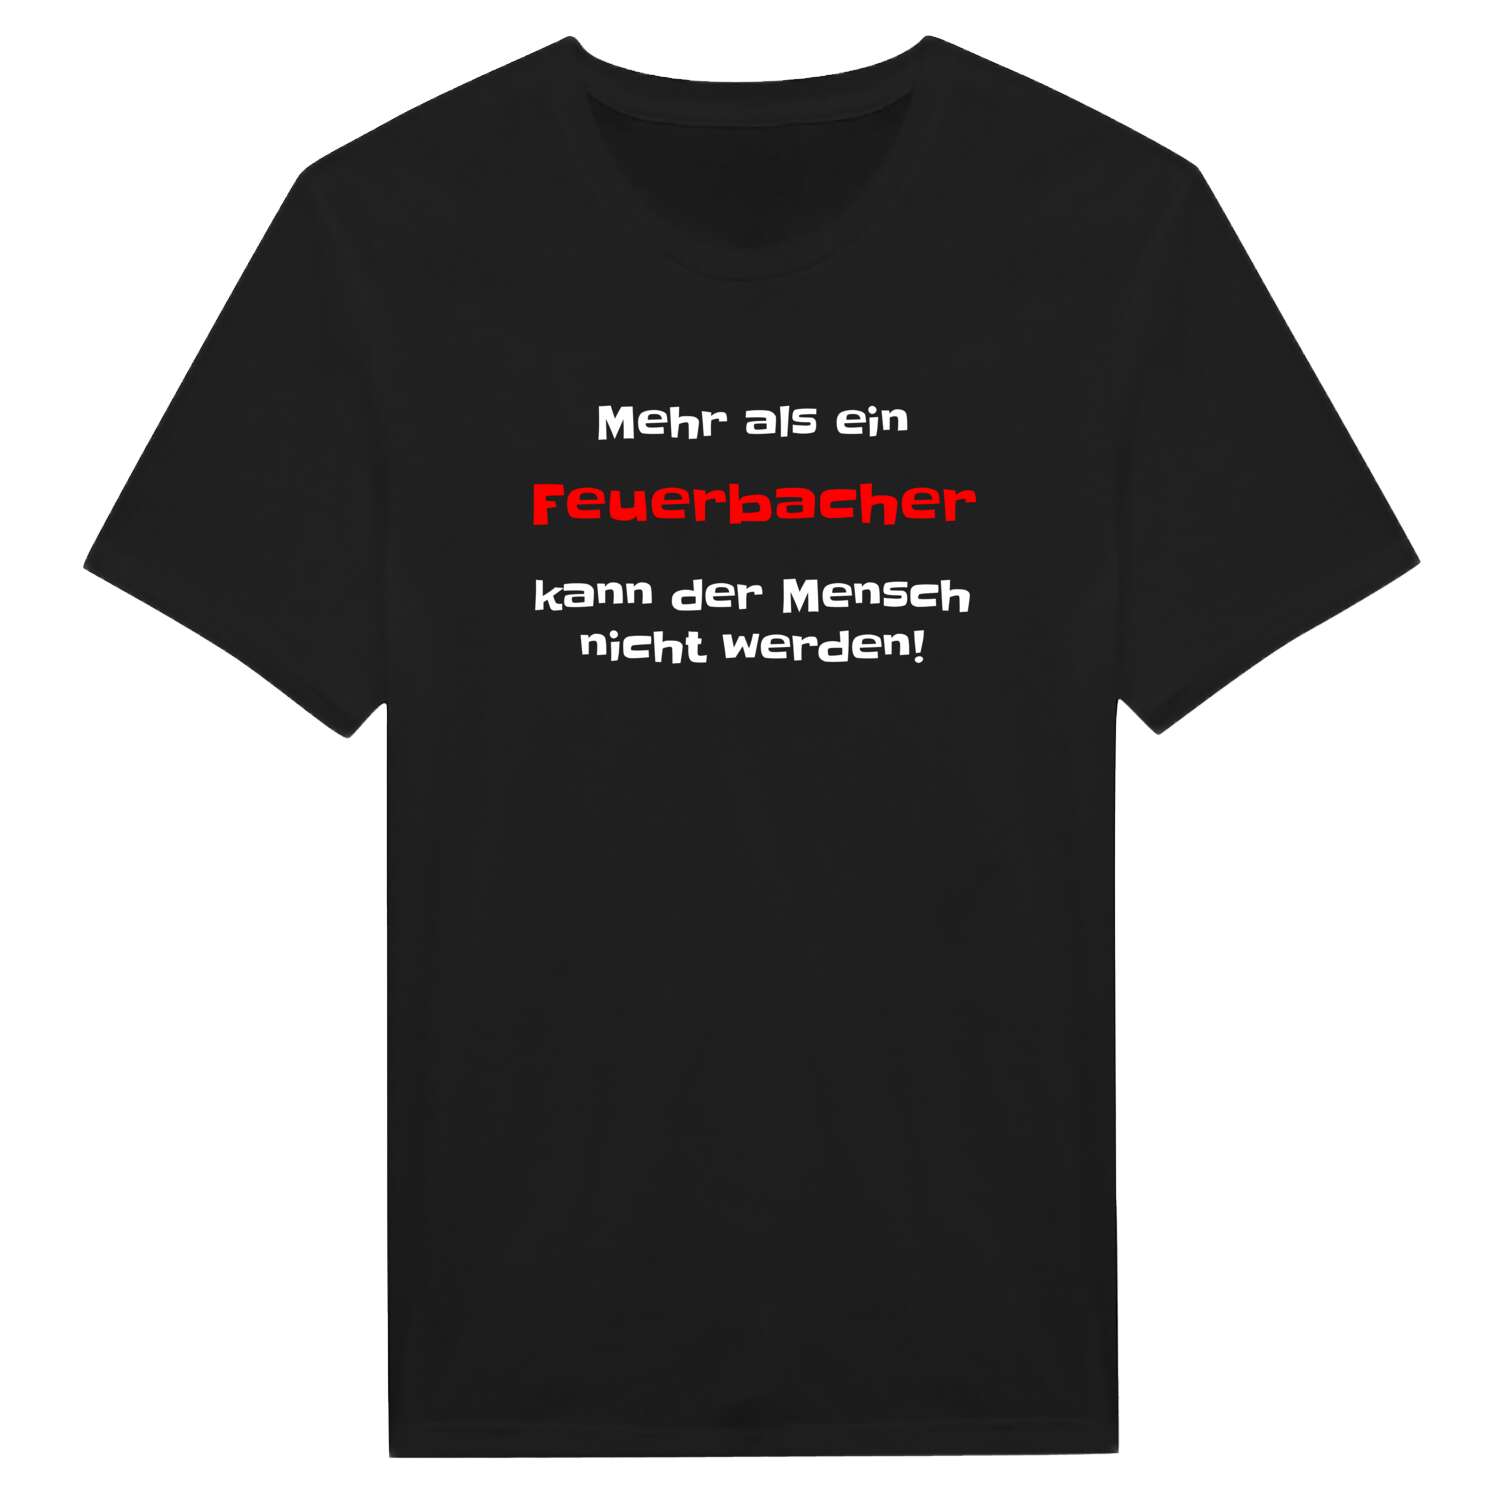 Feuerbach T-Shirt »Mehr als ein«